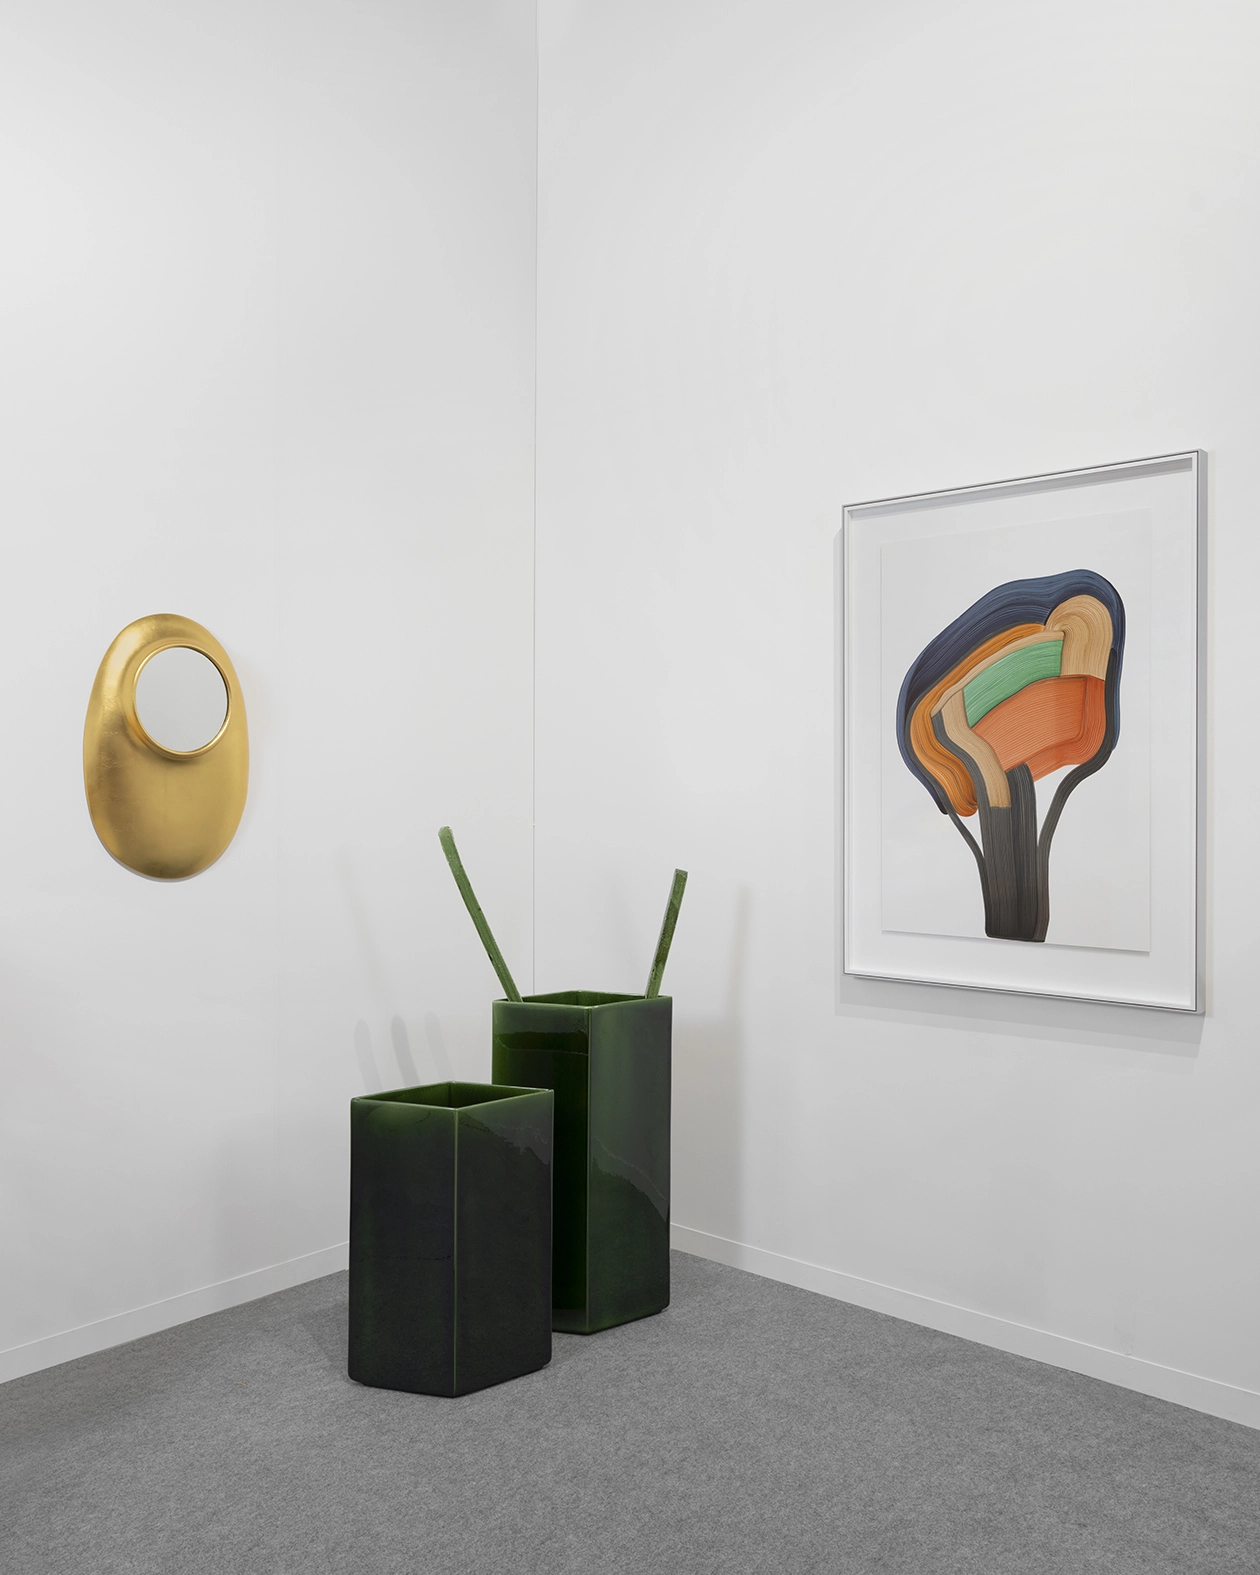 Vase Losange 67 green - Ronan & Erwan Bouroullec - Vase - Galerie kreo